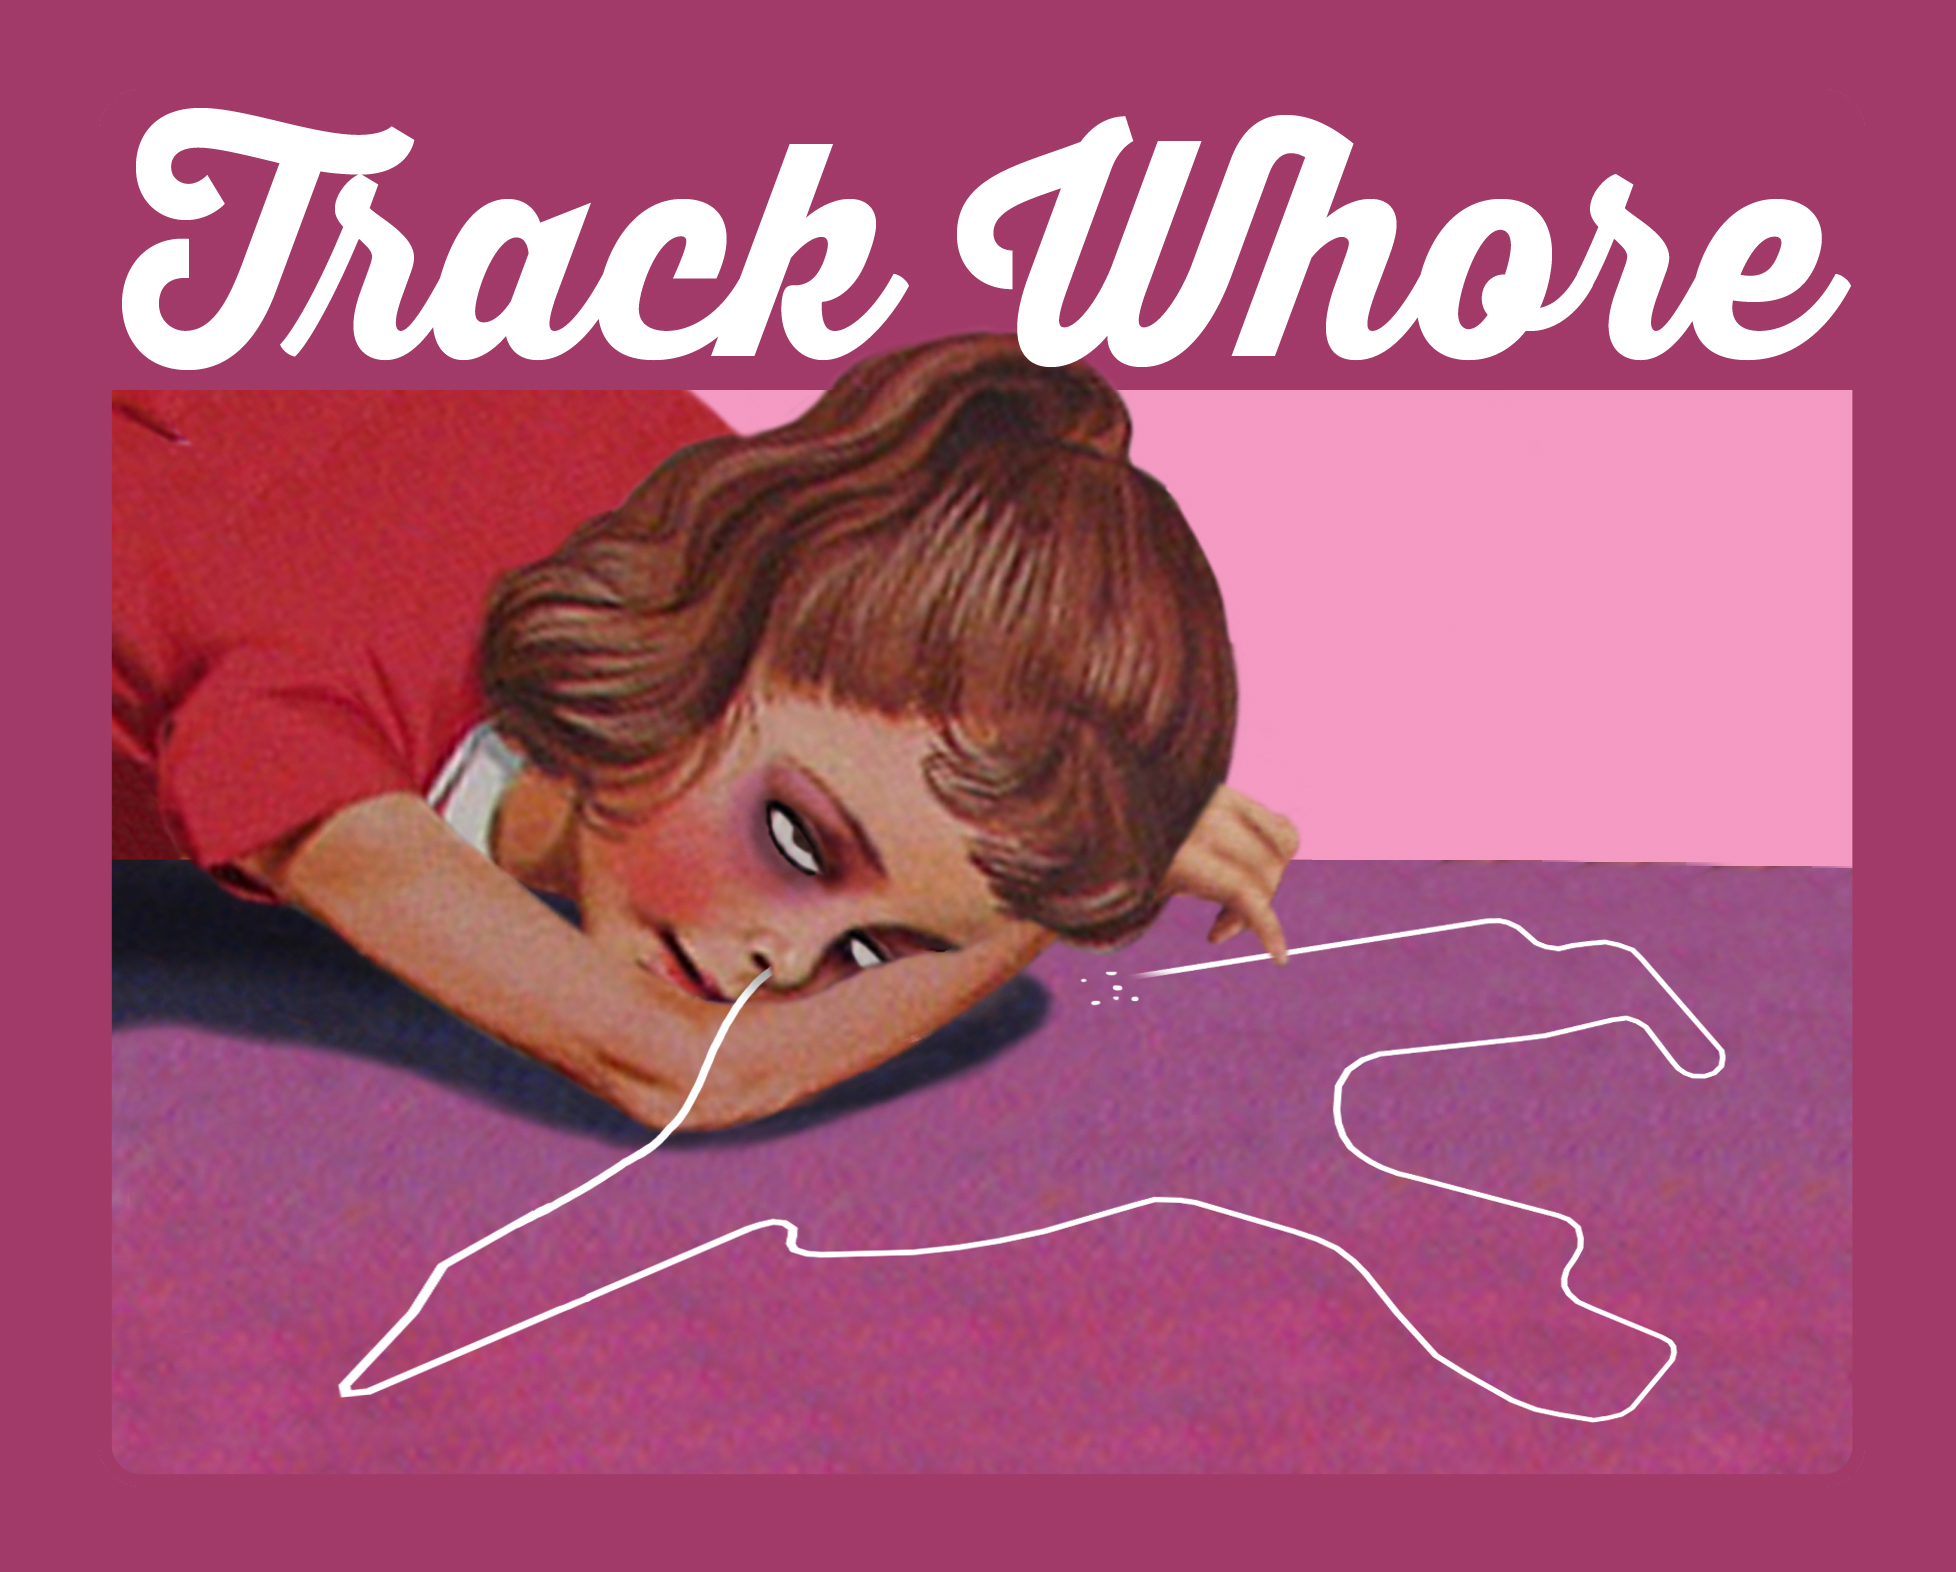 Track Whore